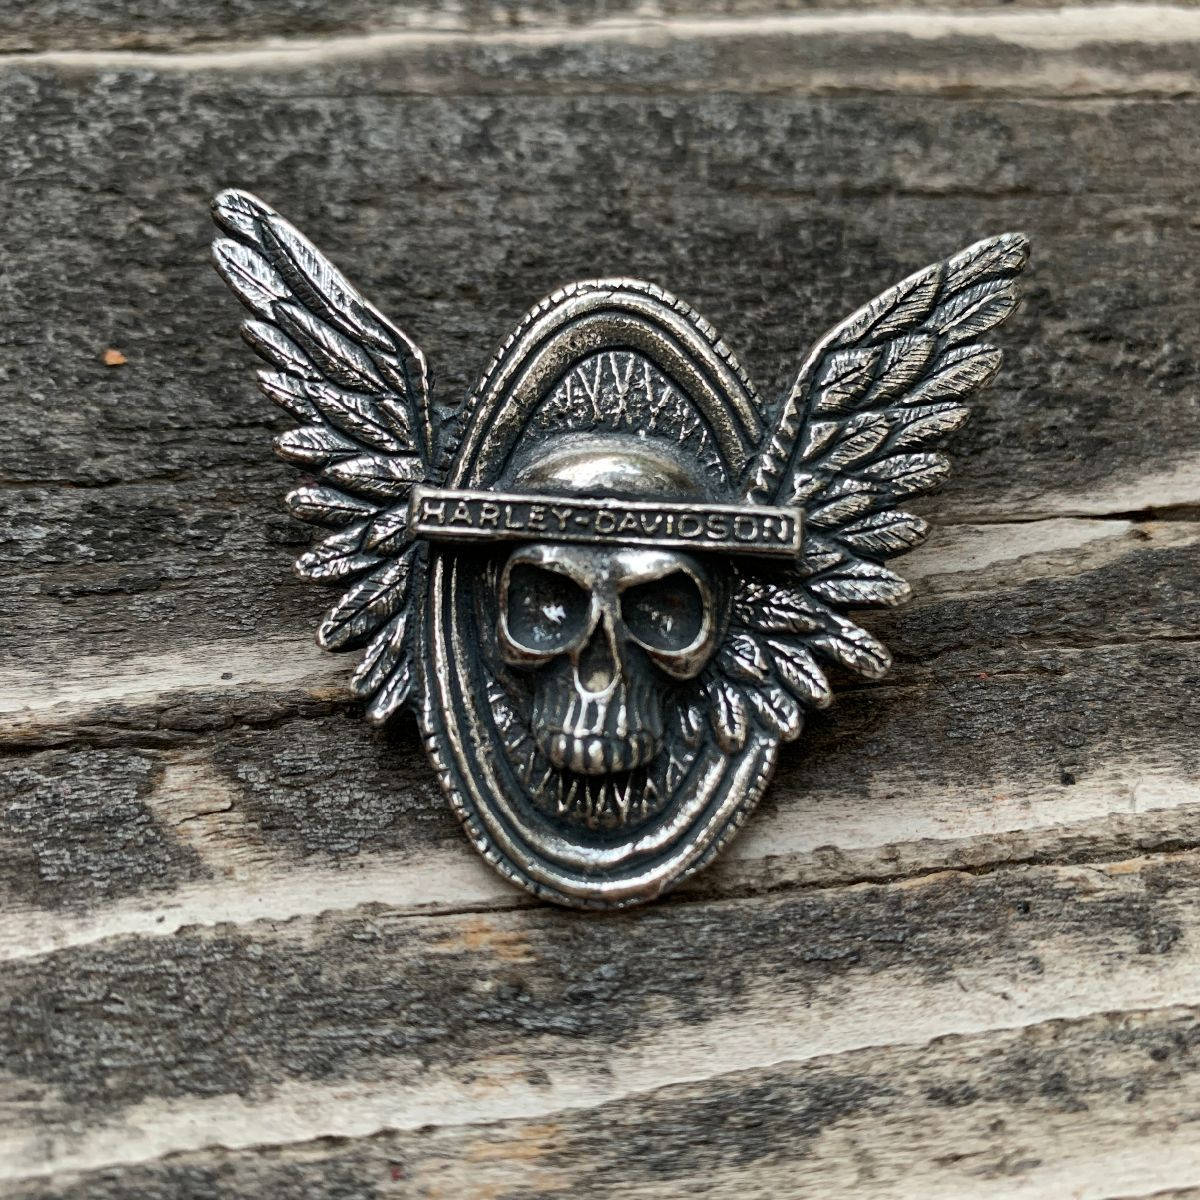 Harley Davidson Emblem Brooch Pin Background